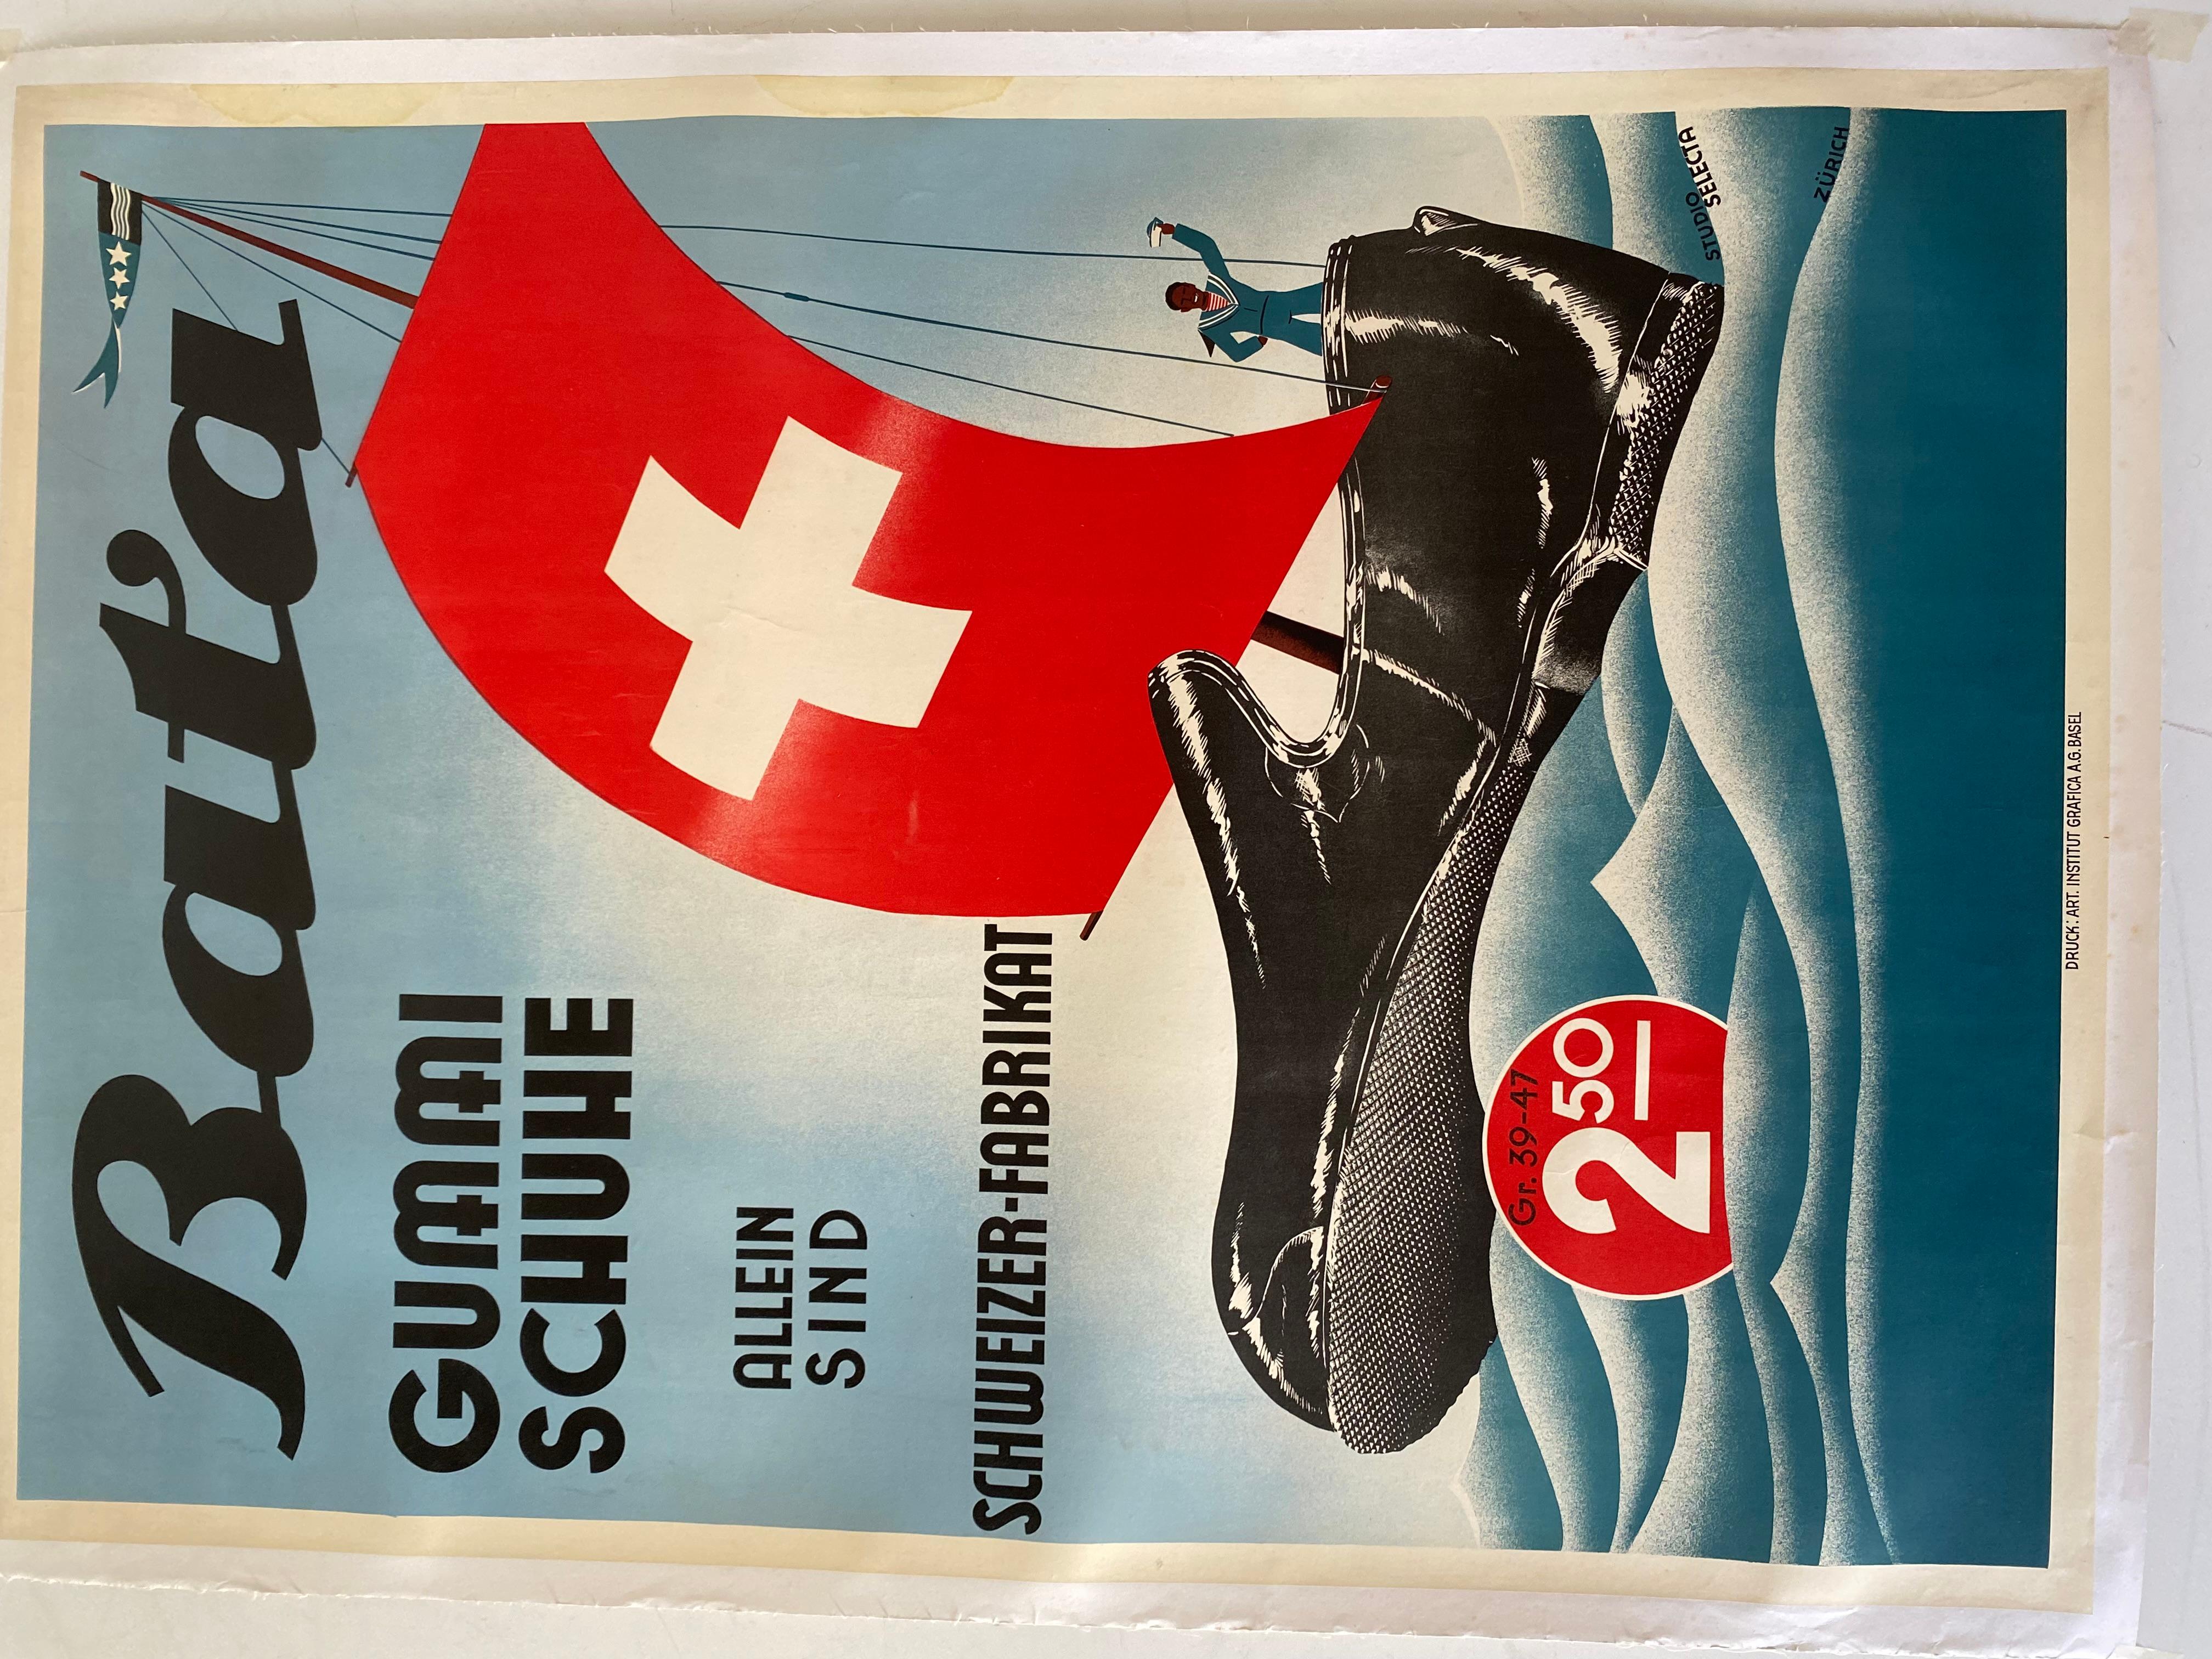 Original BATA-Plakat aus den späten 1950er Jahren. Leinwandpapier und leuchtende Farben. Werbeplakat der weltweit bekannten BATA SHOE ORGANIZATION.

Sehr gute Bedingungen mit einigen Zeichen der Zeit.